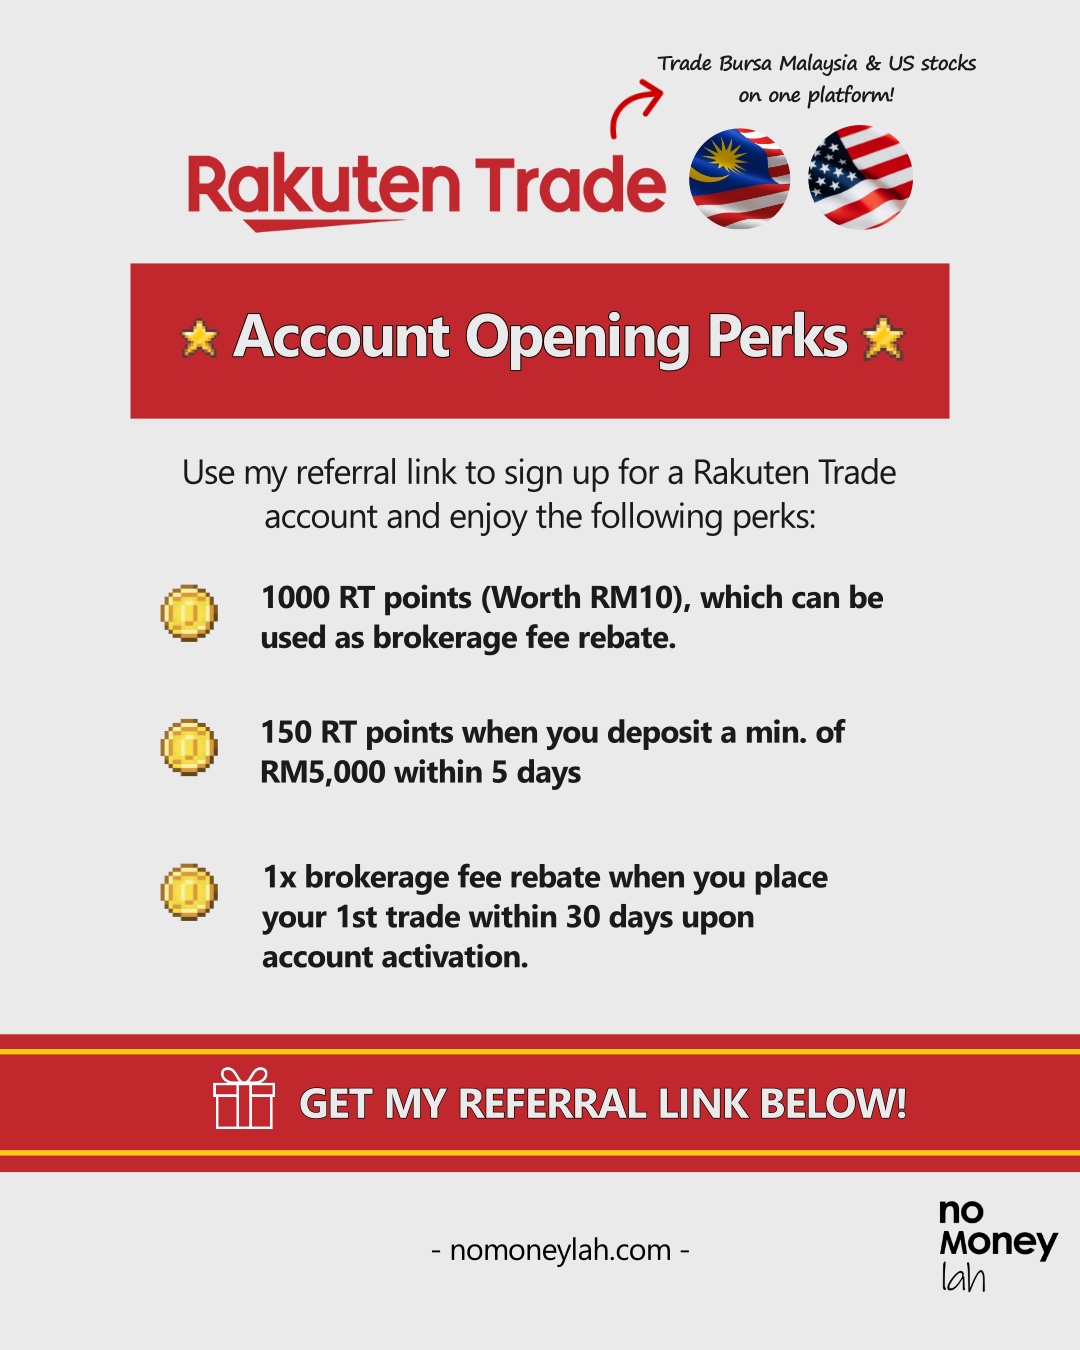 Rakuten Trade Referral Link